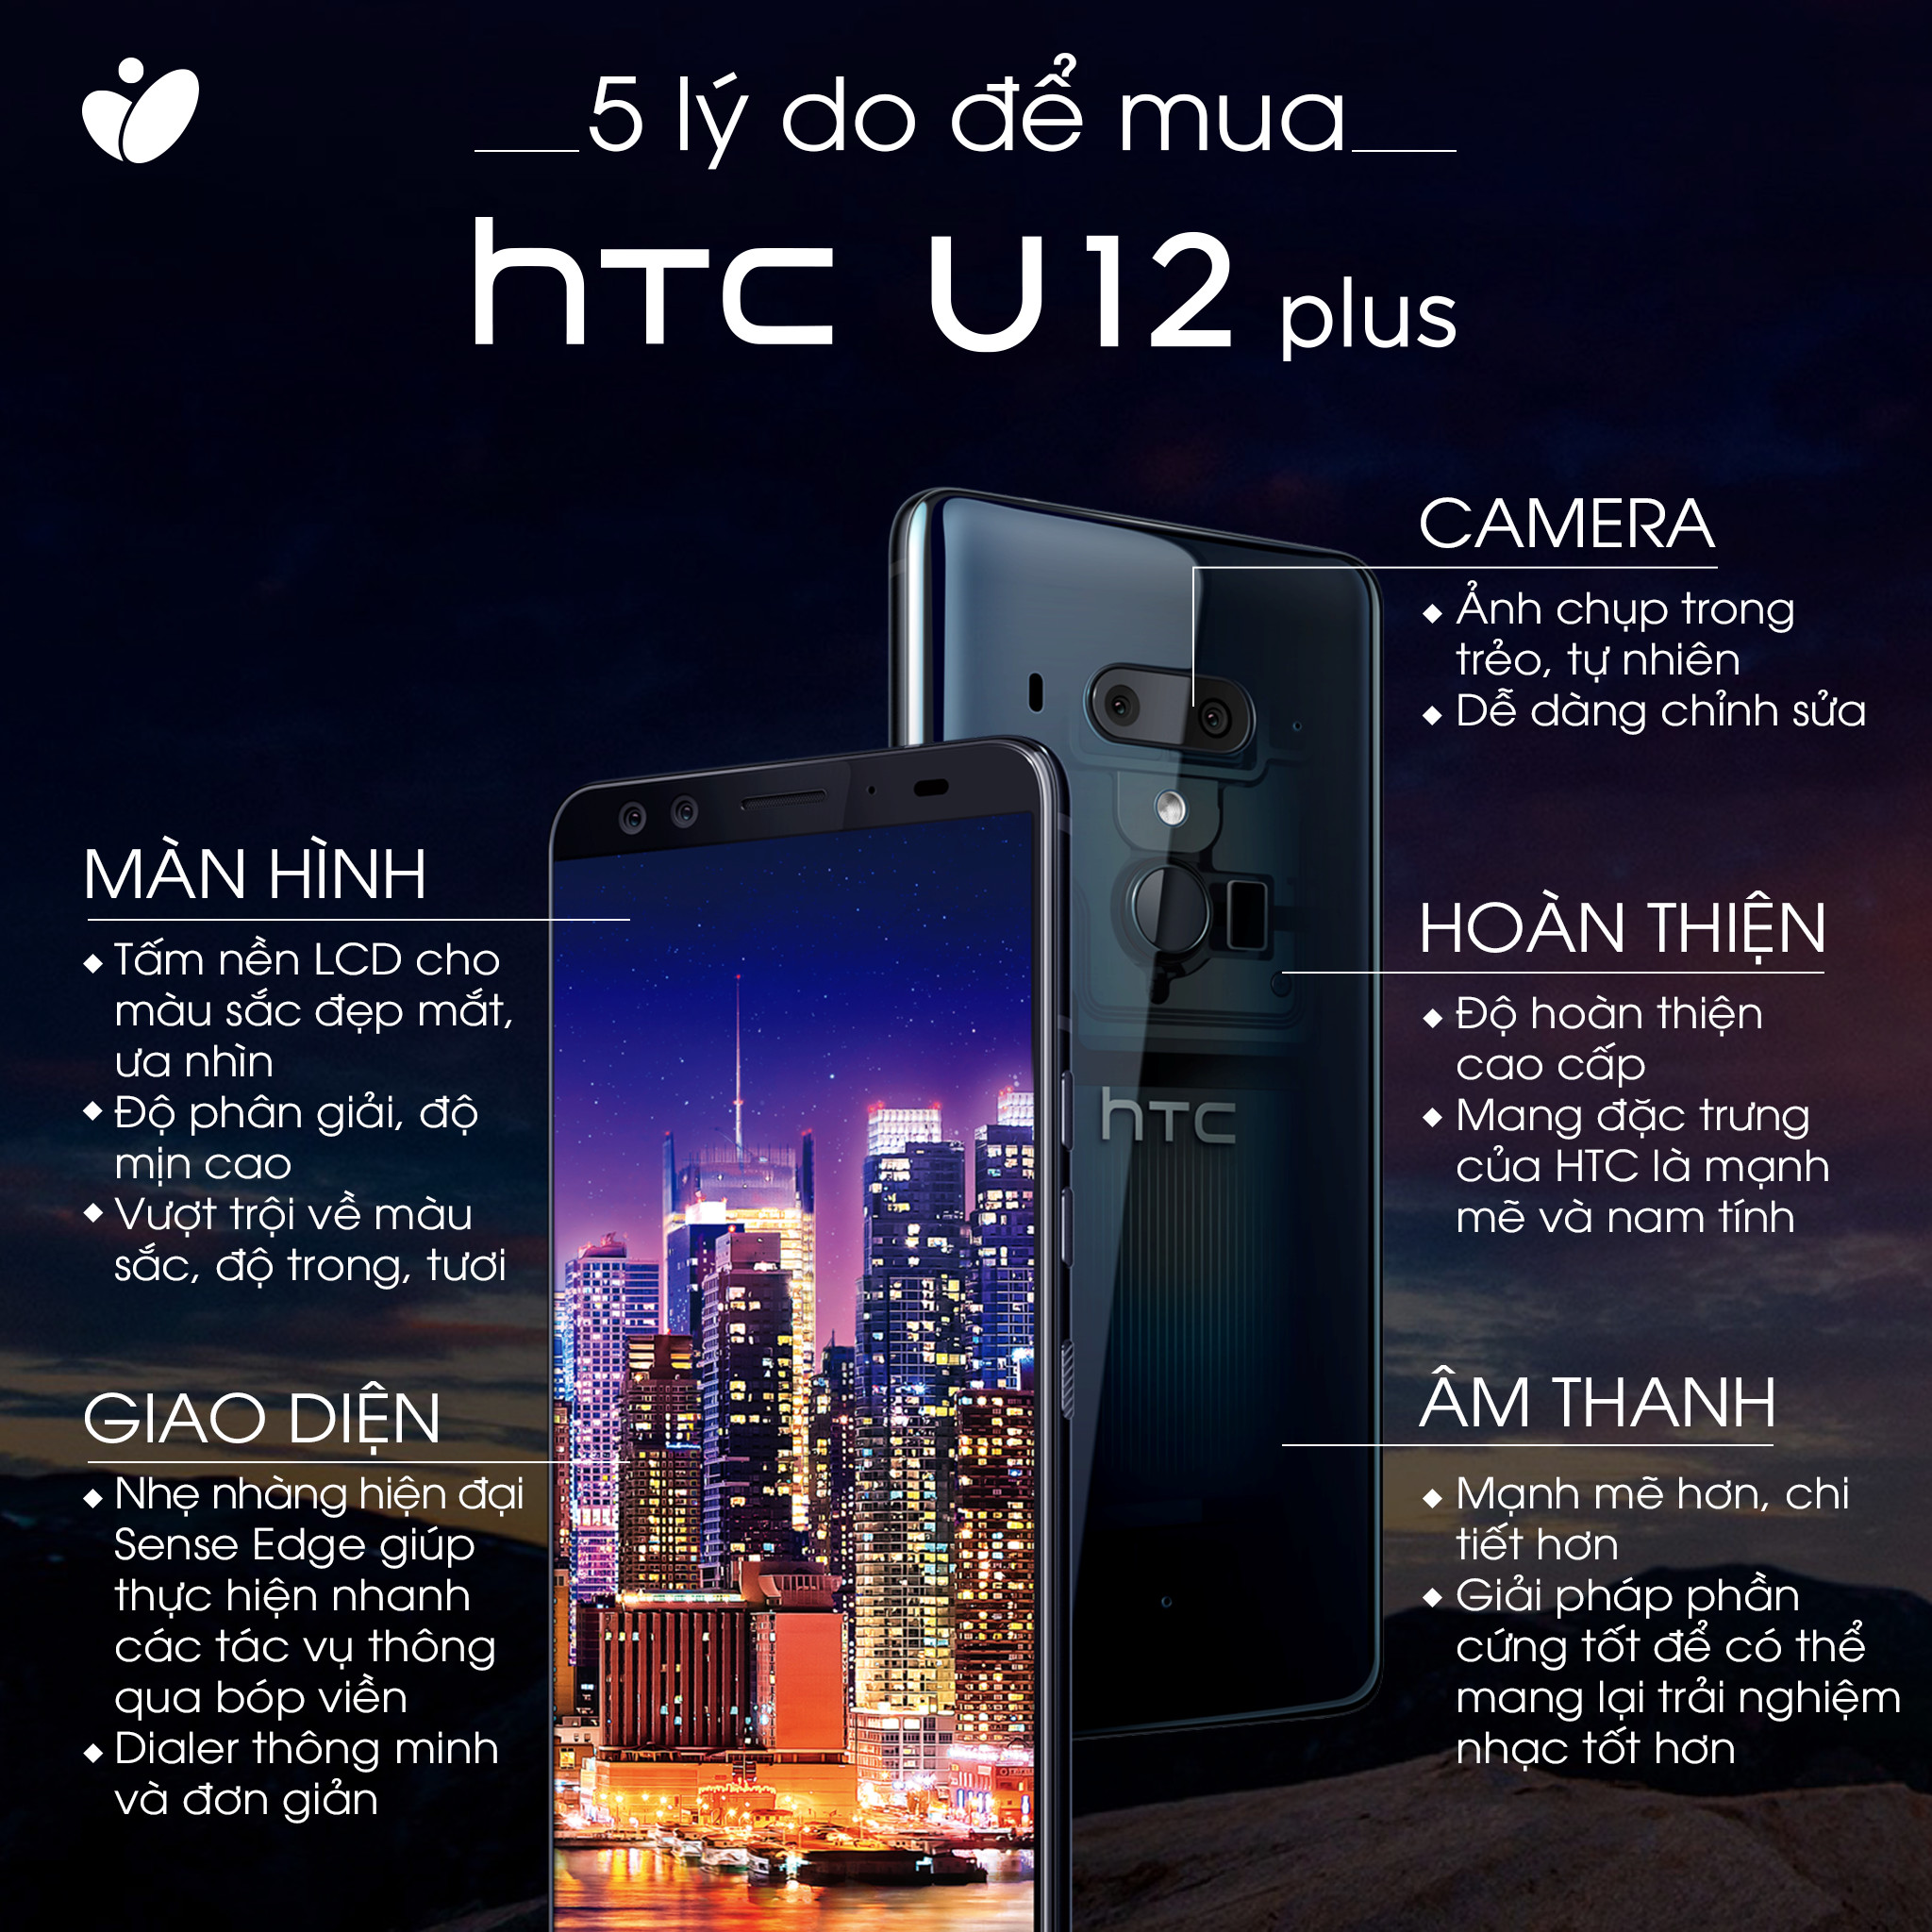 HTCU12+.JPG